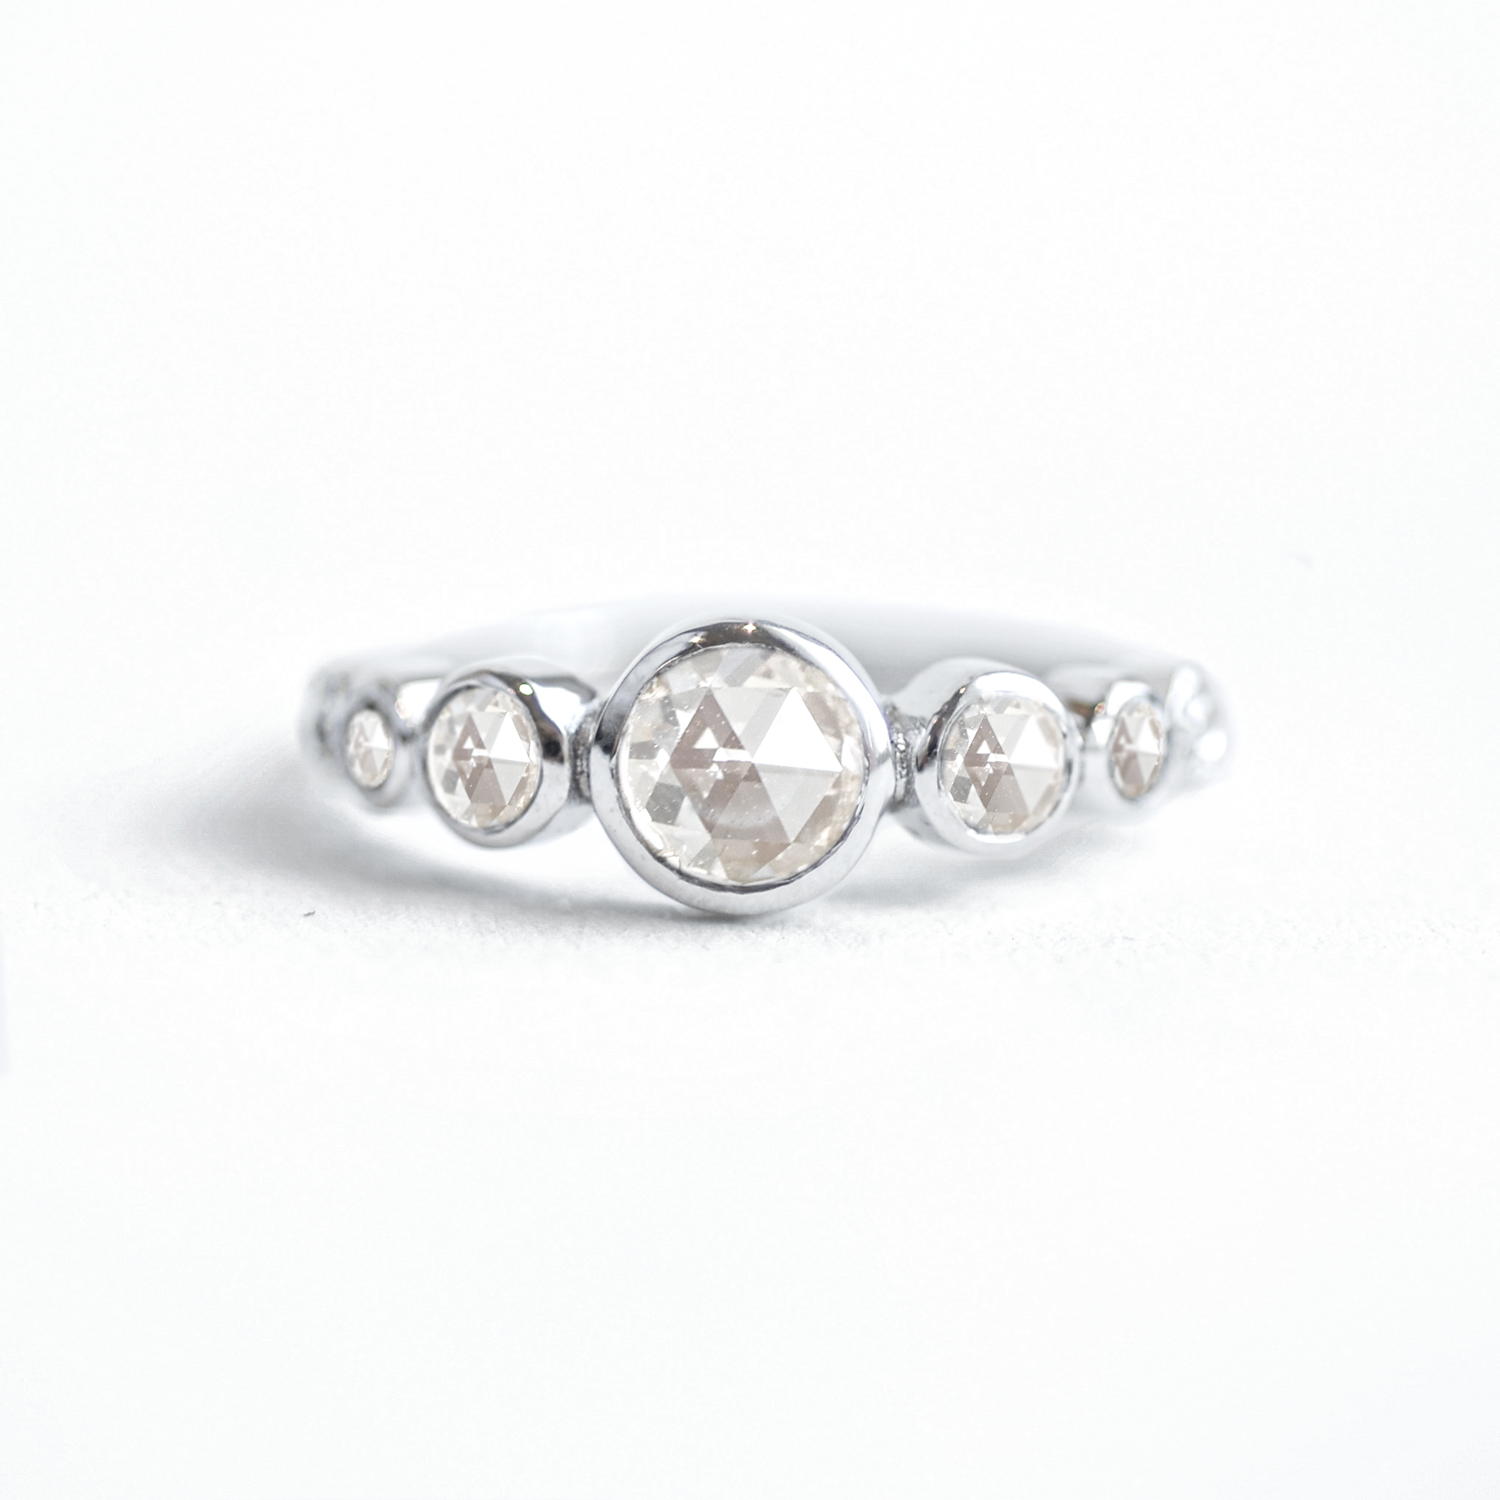 Chúng ta hãy thưởng thức chiếc nhẫn vàng độc đáo được bọc kềm với hạt cườm vòng kim cương của Berlinger Jewelry tại Los Angeles. Bạn sẽ khiến mọi người trầm trồ khi đeo chiếc nhẫn độc đáo và sang trọng này. Hãy xem hình ảnh liên quan để hiểu thêm về sản phẩm.